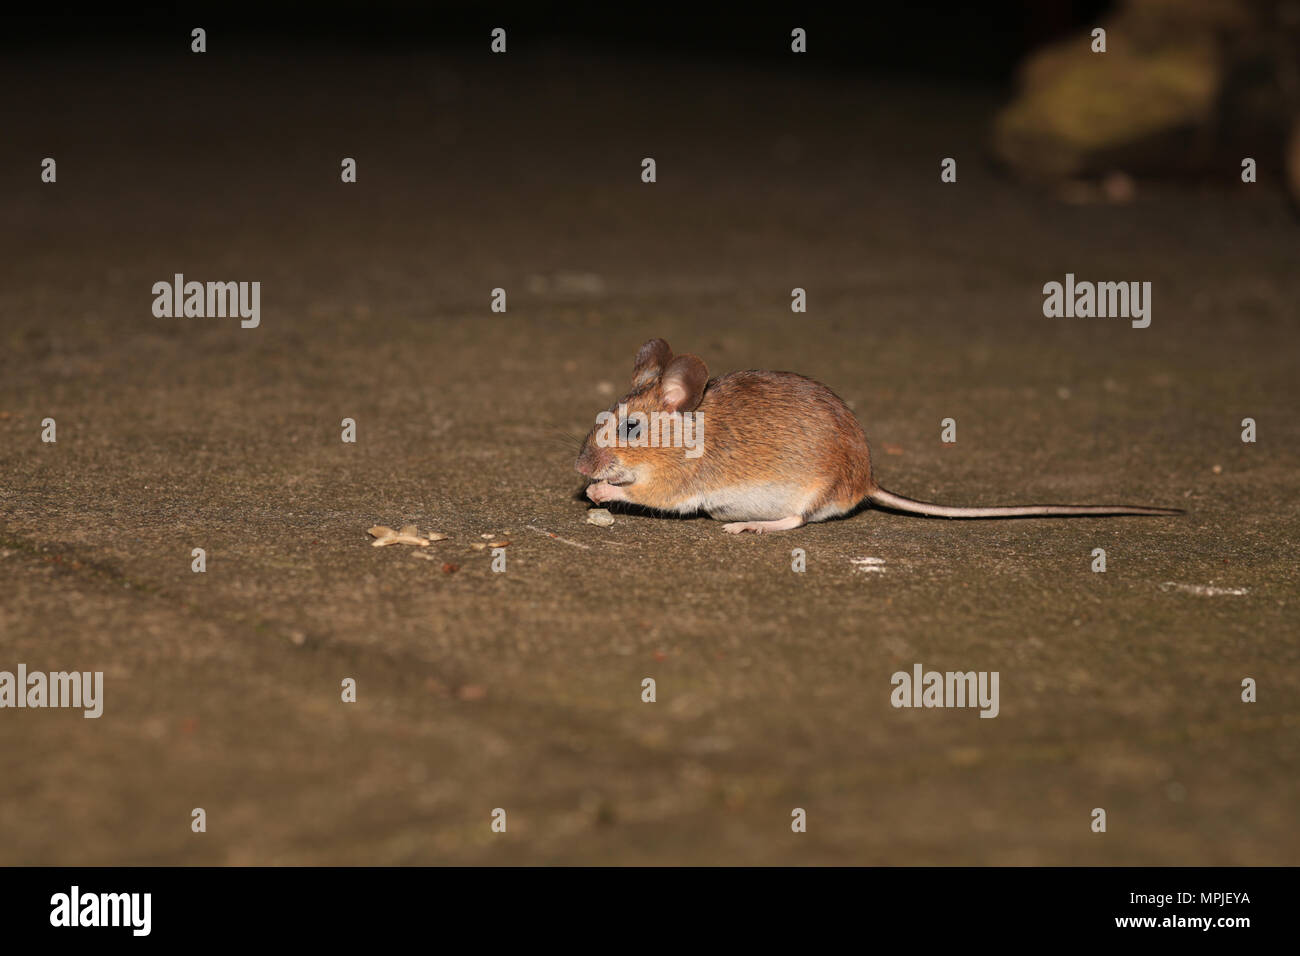 A wild Wood mouse (Apodemus Sylvaticus) feeding in an English garden. Stock Photo